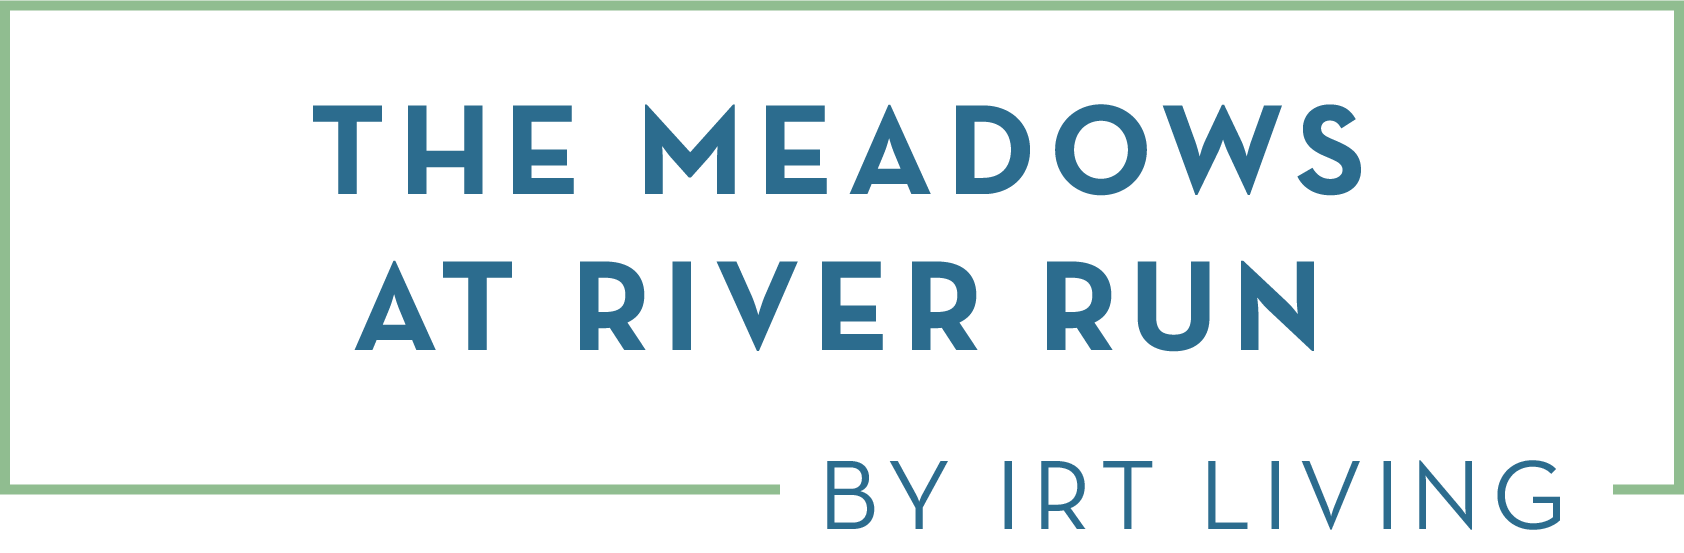 Meadows at River Run